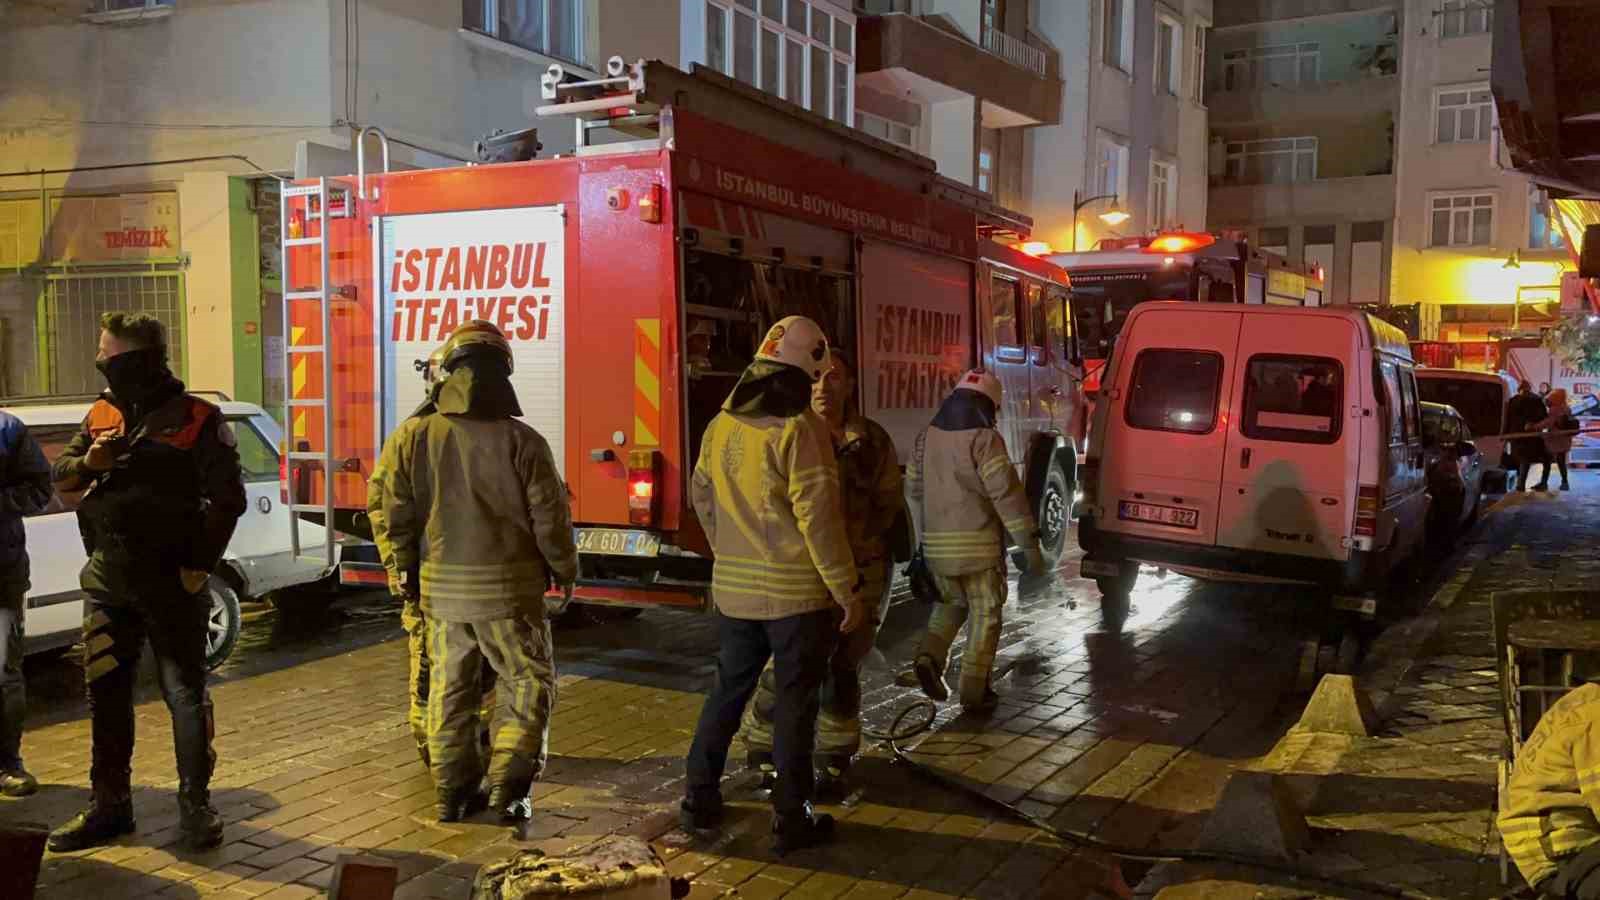 zeytinburnu’nda solunum cihazı evi yaktı: 1 yaralı